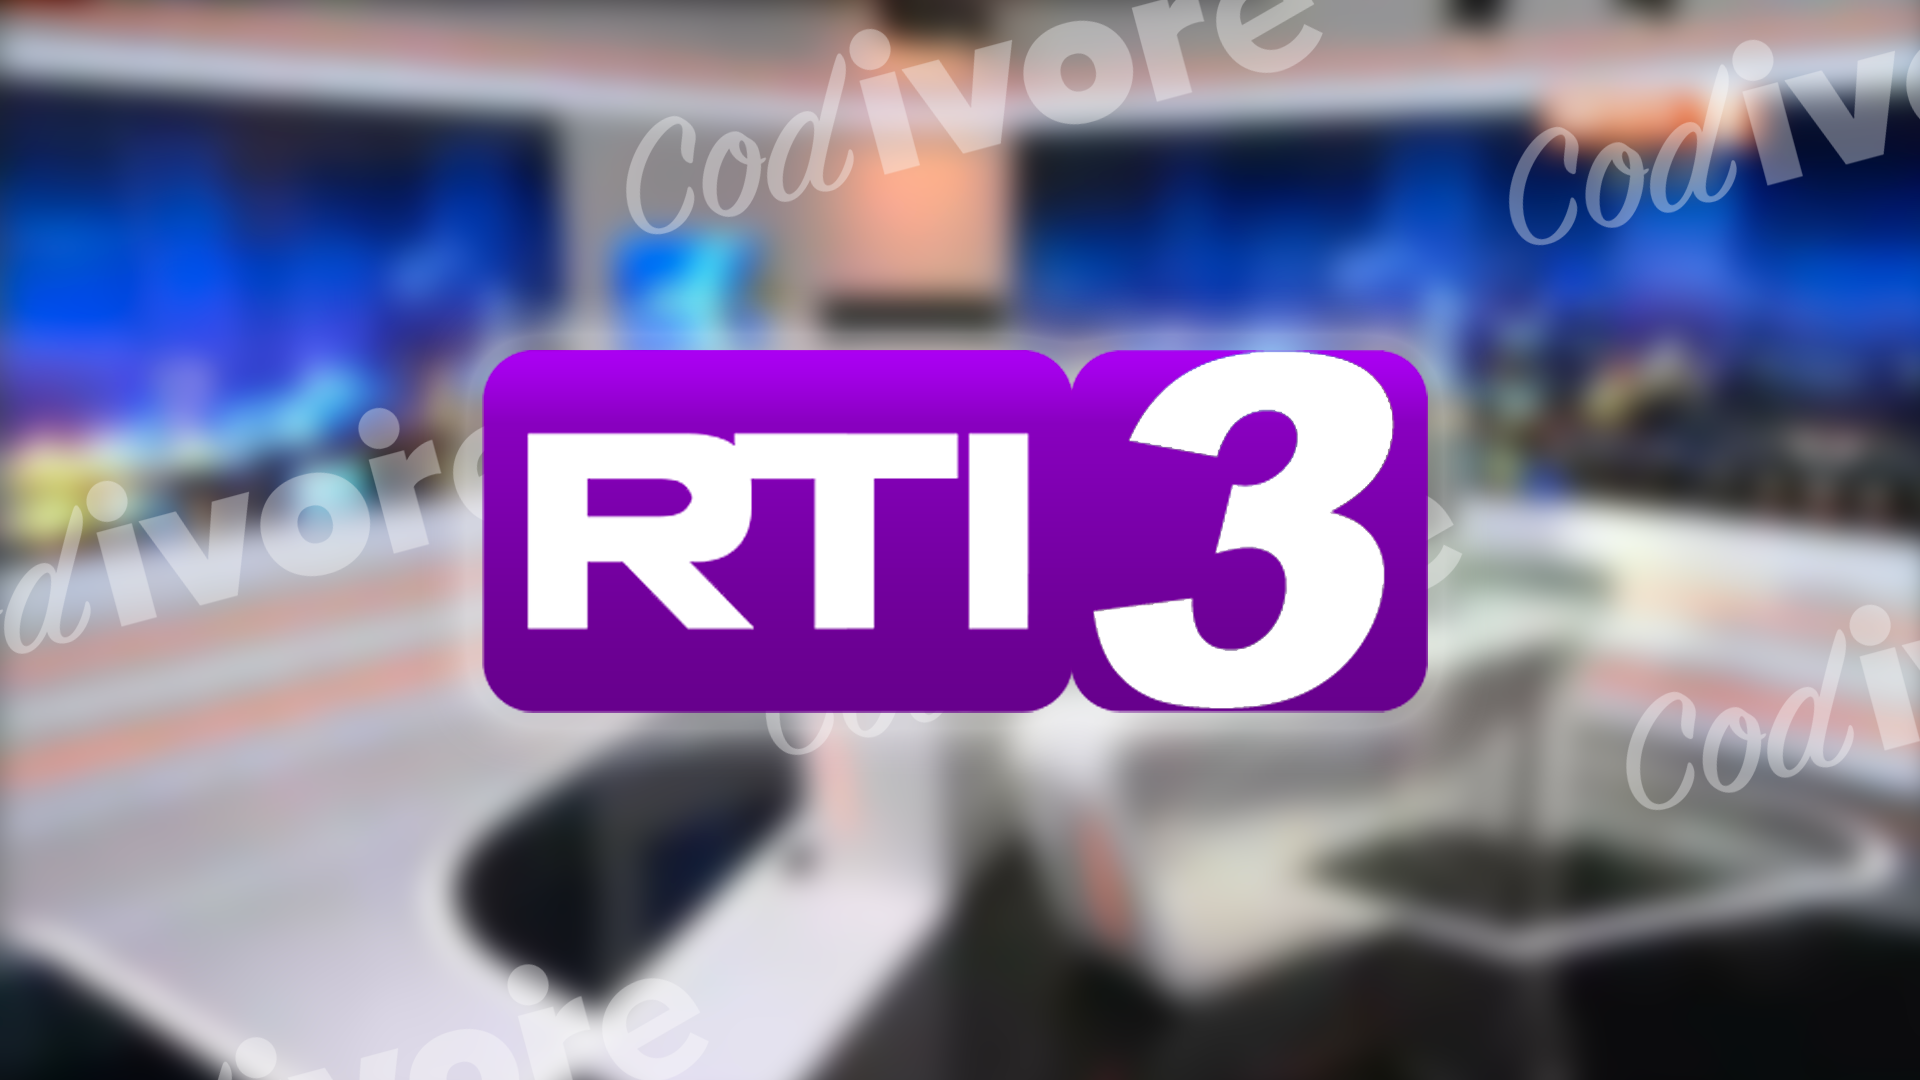 RTI3 : La nouvelle chaine du groupe RTI